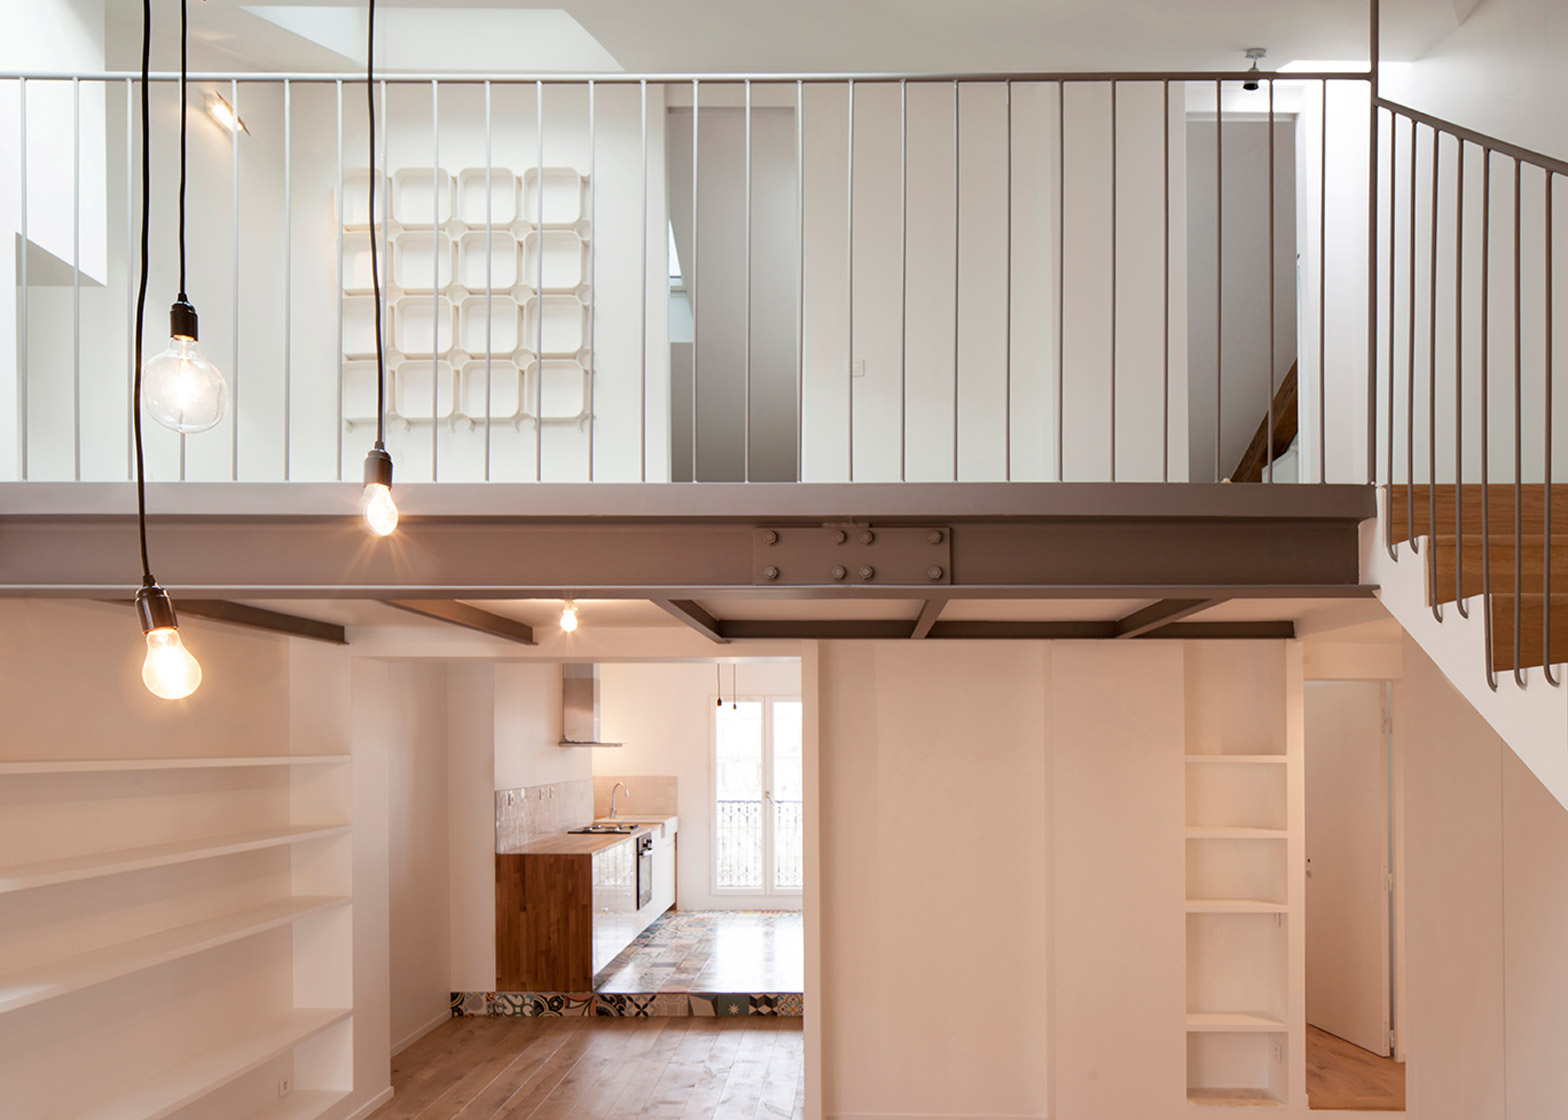 Cairos Architecture Adds Mezzanine To Paris Apartment